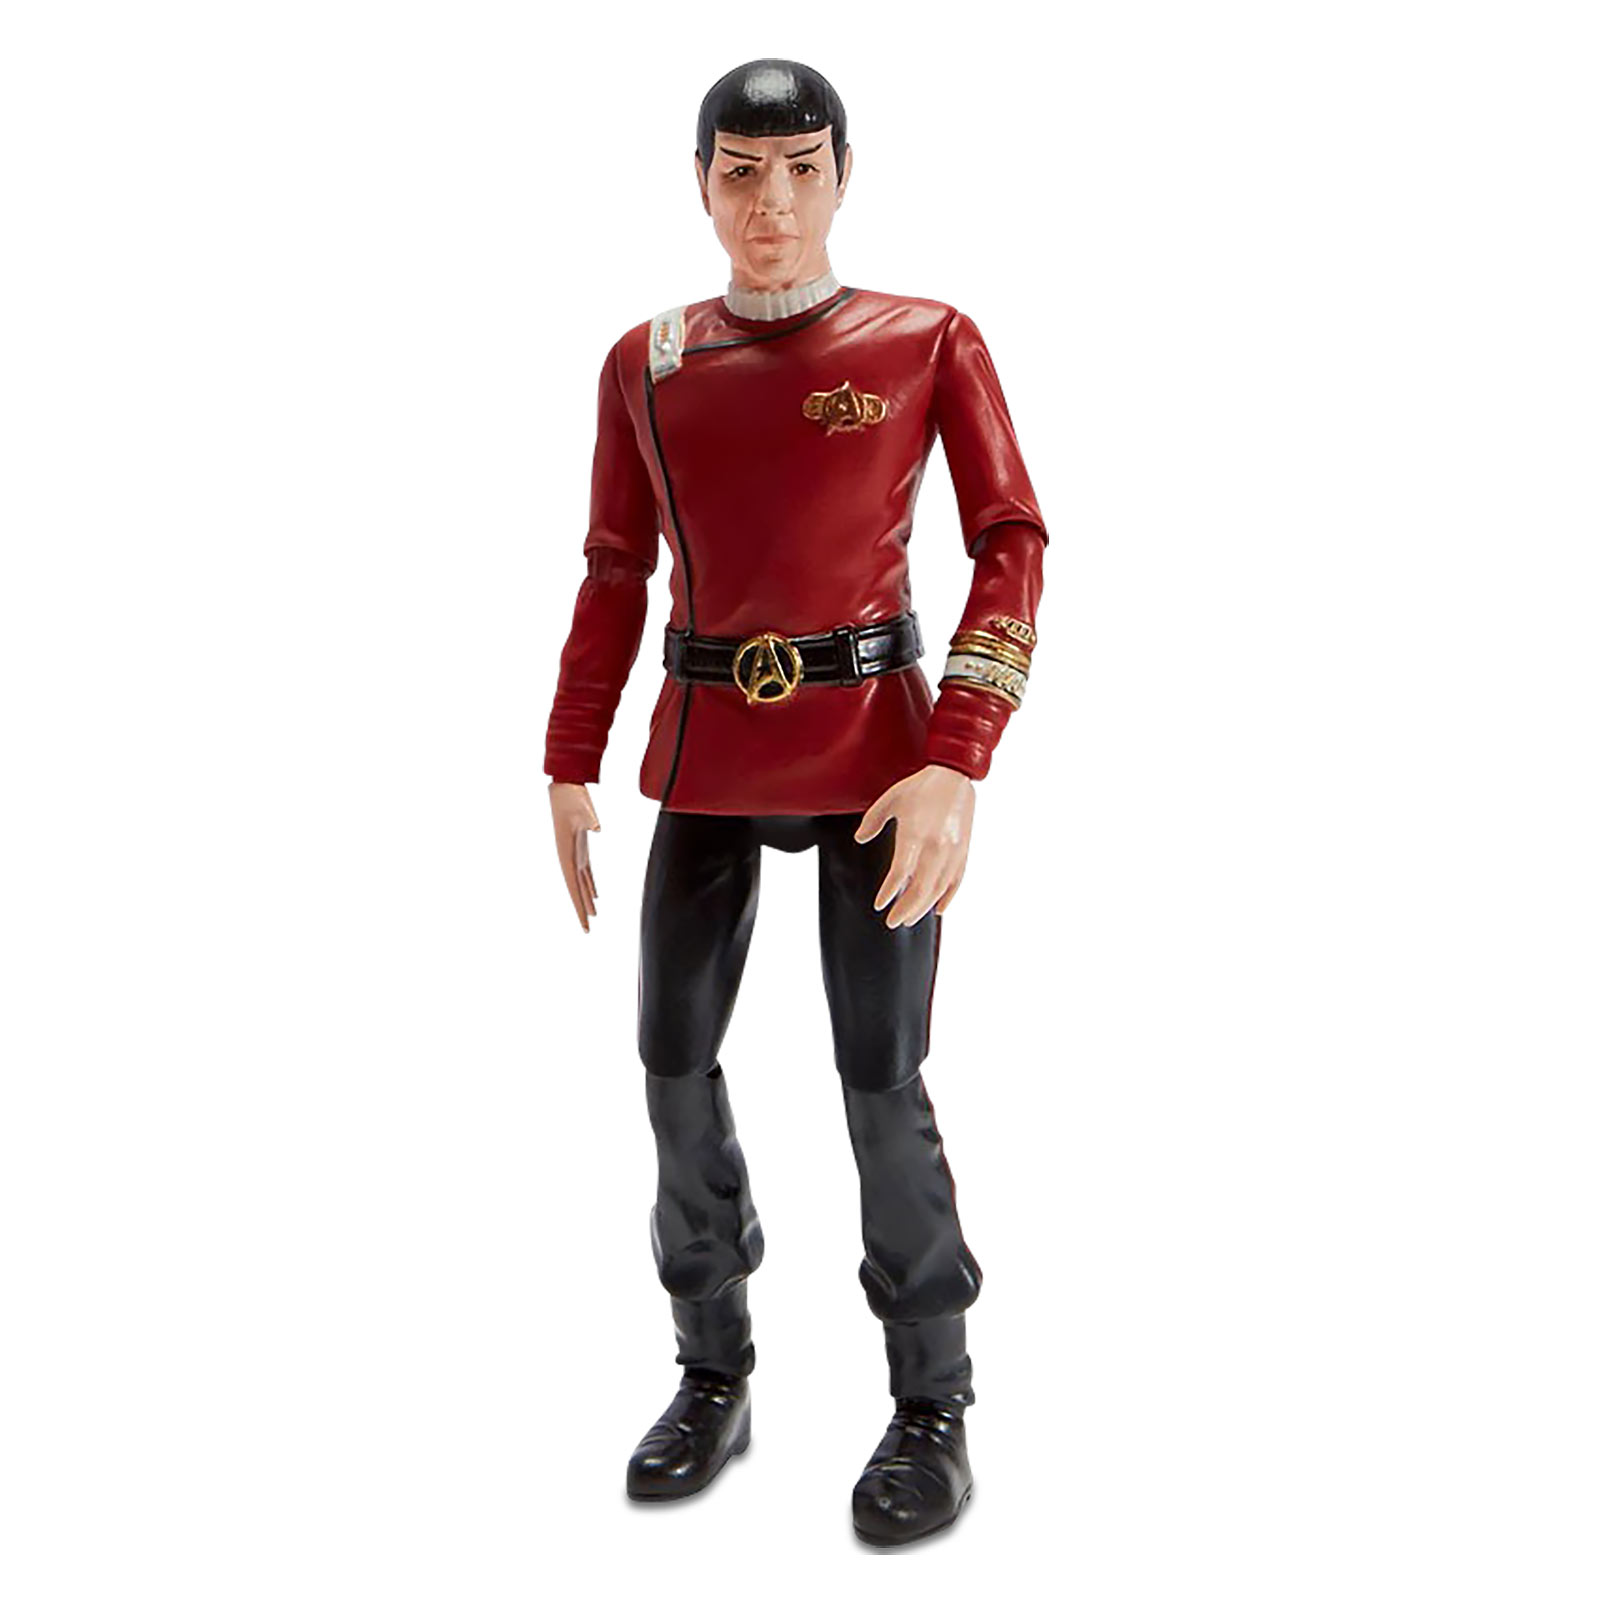 Star Trek - Spock Action Figure